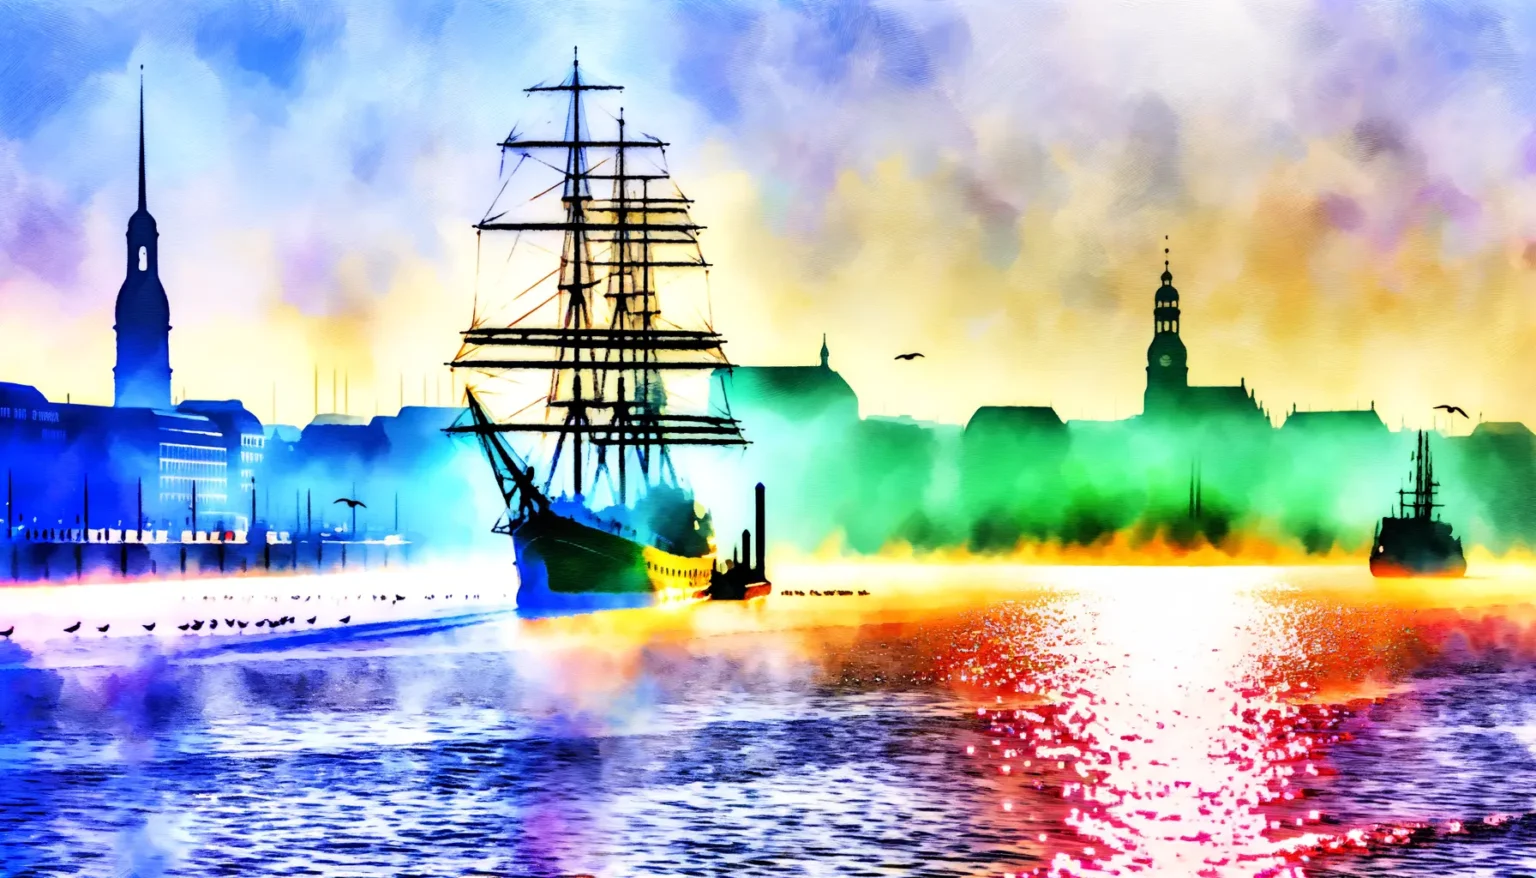 Farbenfrohe, stilisierte Darstellung einer Hafenstadt bei Sonnenuntergang mit Silhouetten von Schiffen, darunter ein Großsegler, und Gebäuden im Hintergrund, wobei das Wasser reflektierende Sonnenlichteffekte zeigt.